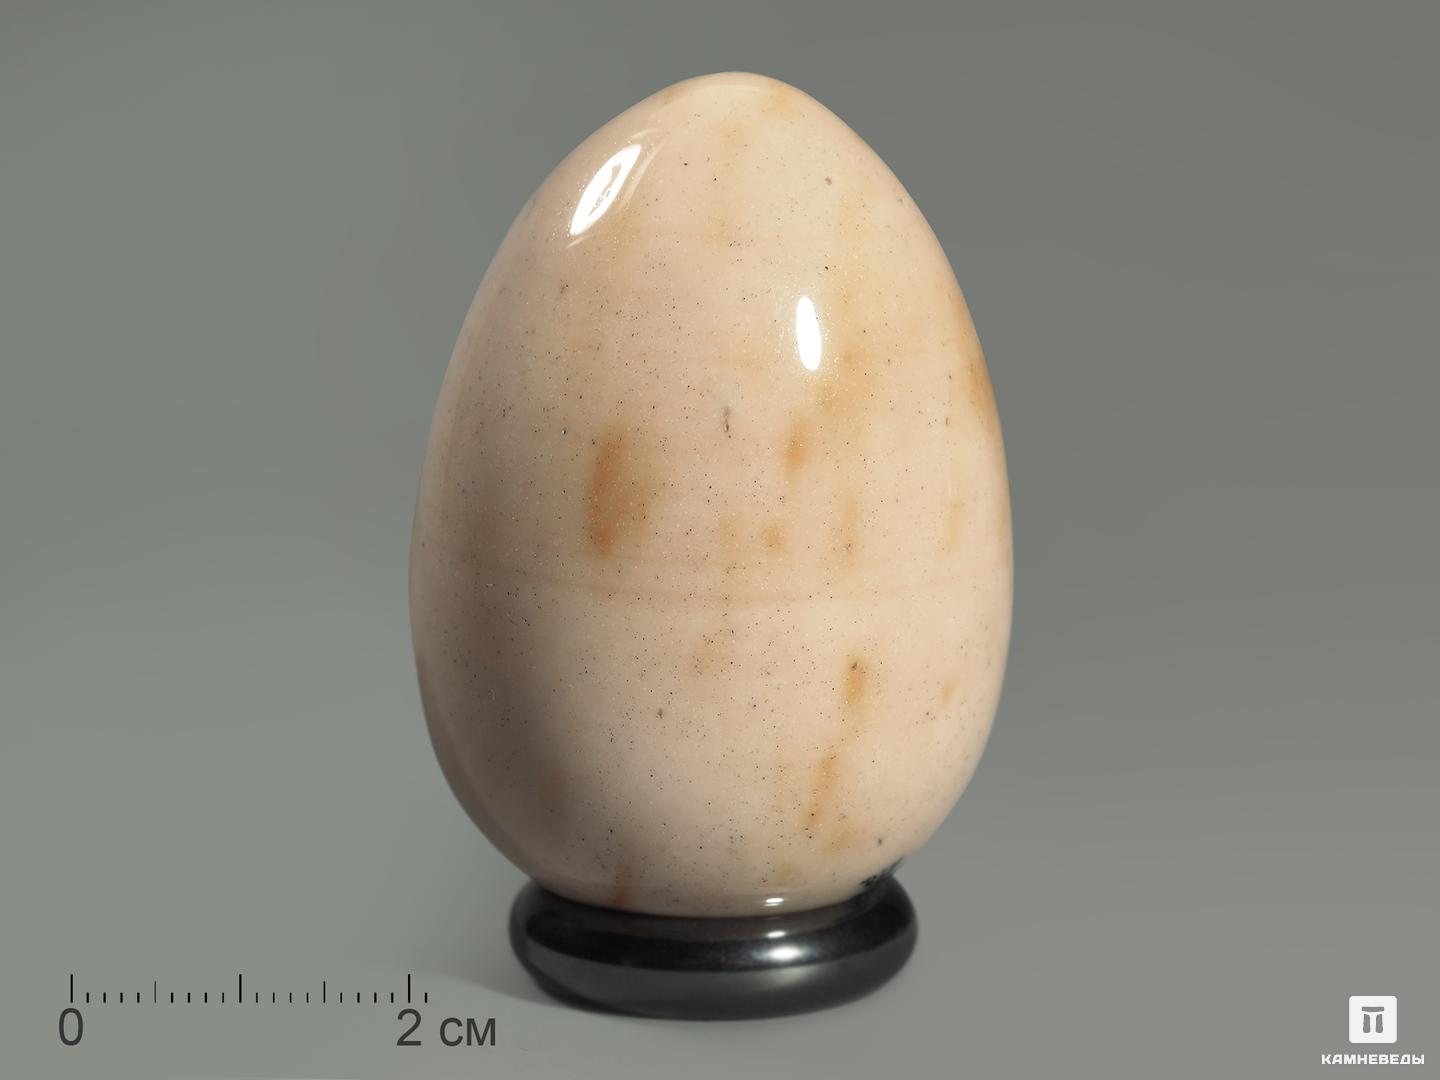 Яйцо из яшмы австралийской (мукаита), 5 см